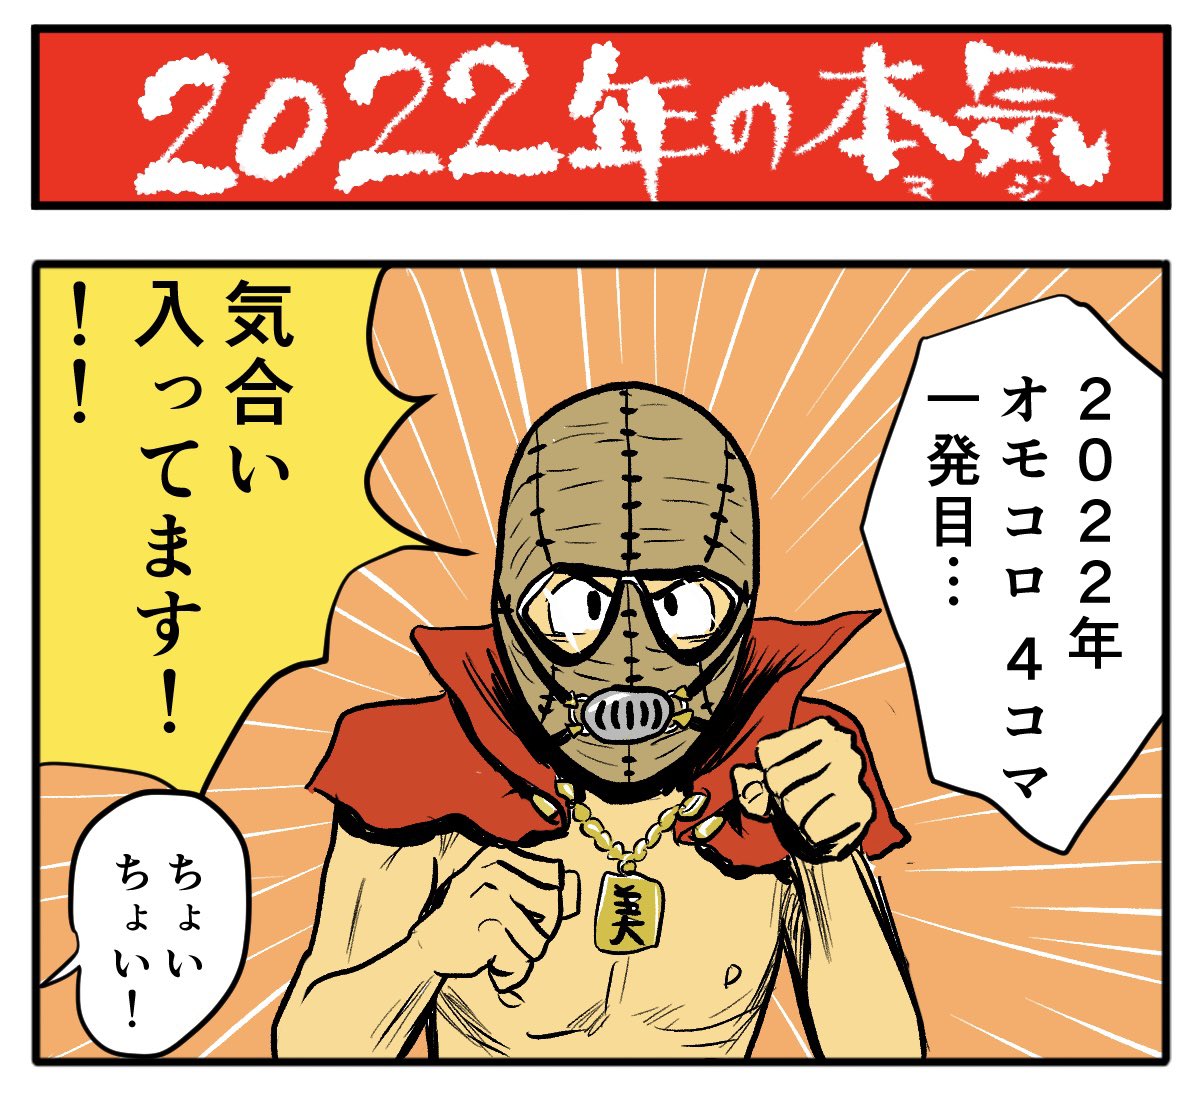 景気良く行きましょう!

【4コマ漫画】2022年の本気(マジ) | オモコロ 
https://t.co/50SlIFWunt 